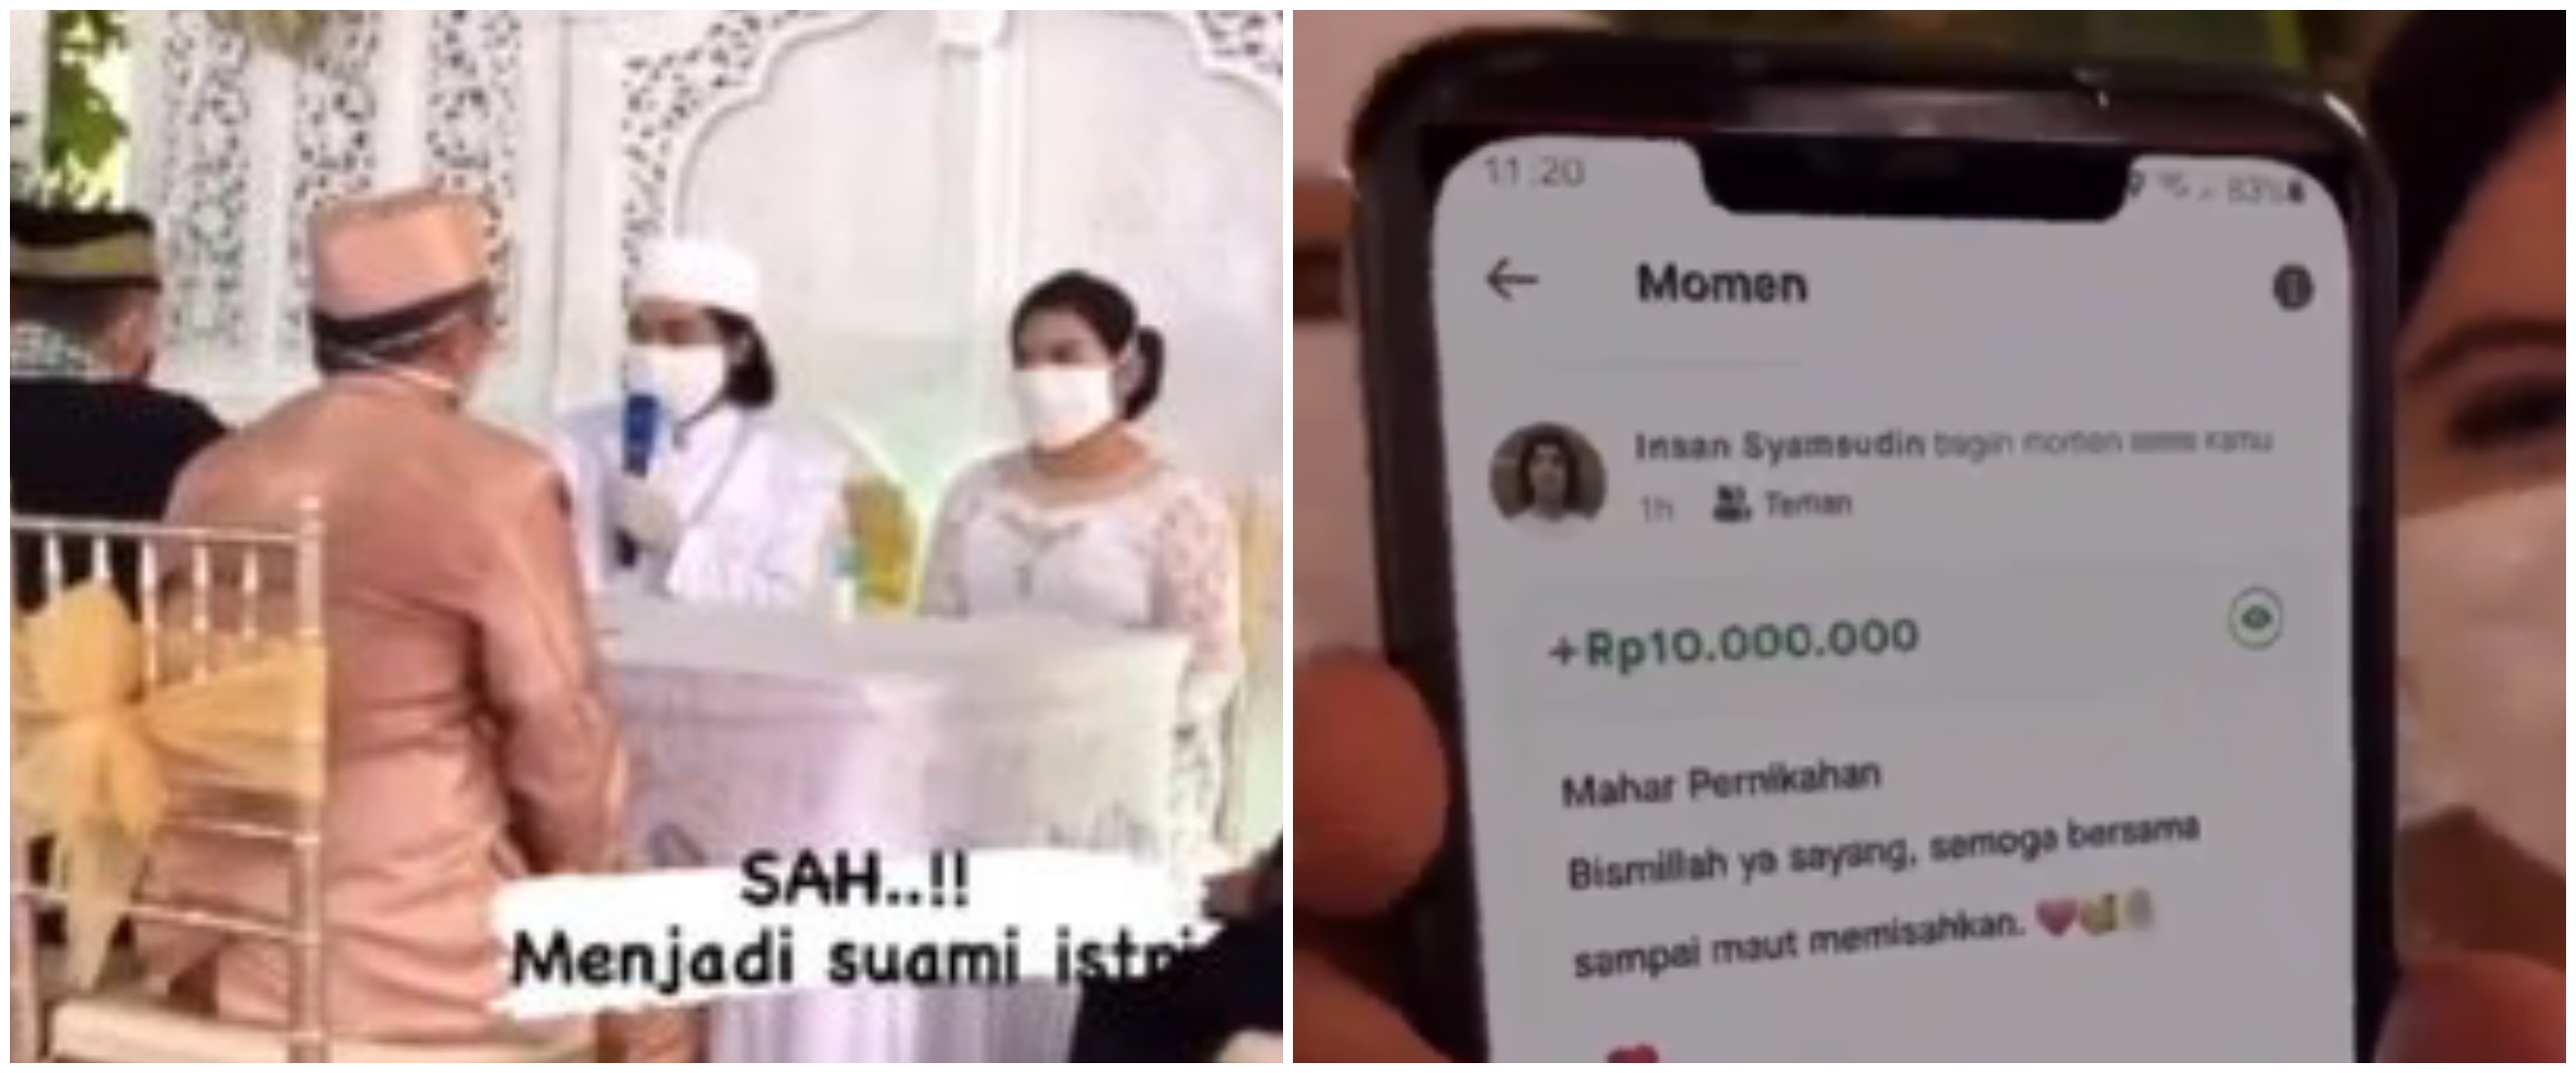 Viral pernikahan dengan mahar saldo Rp 10 juta di aplikasi ojek online